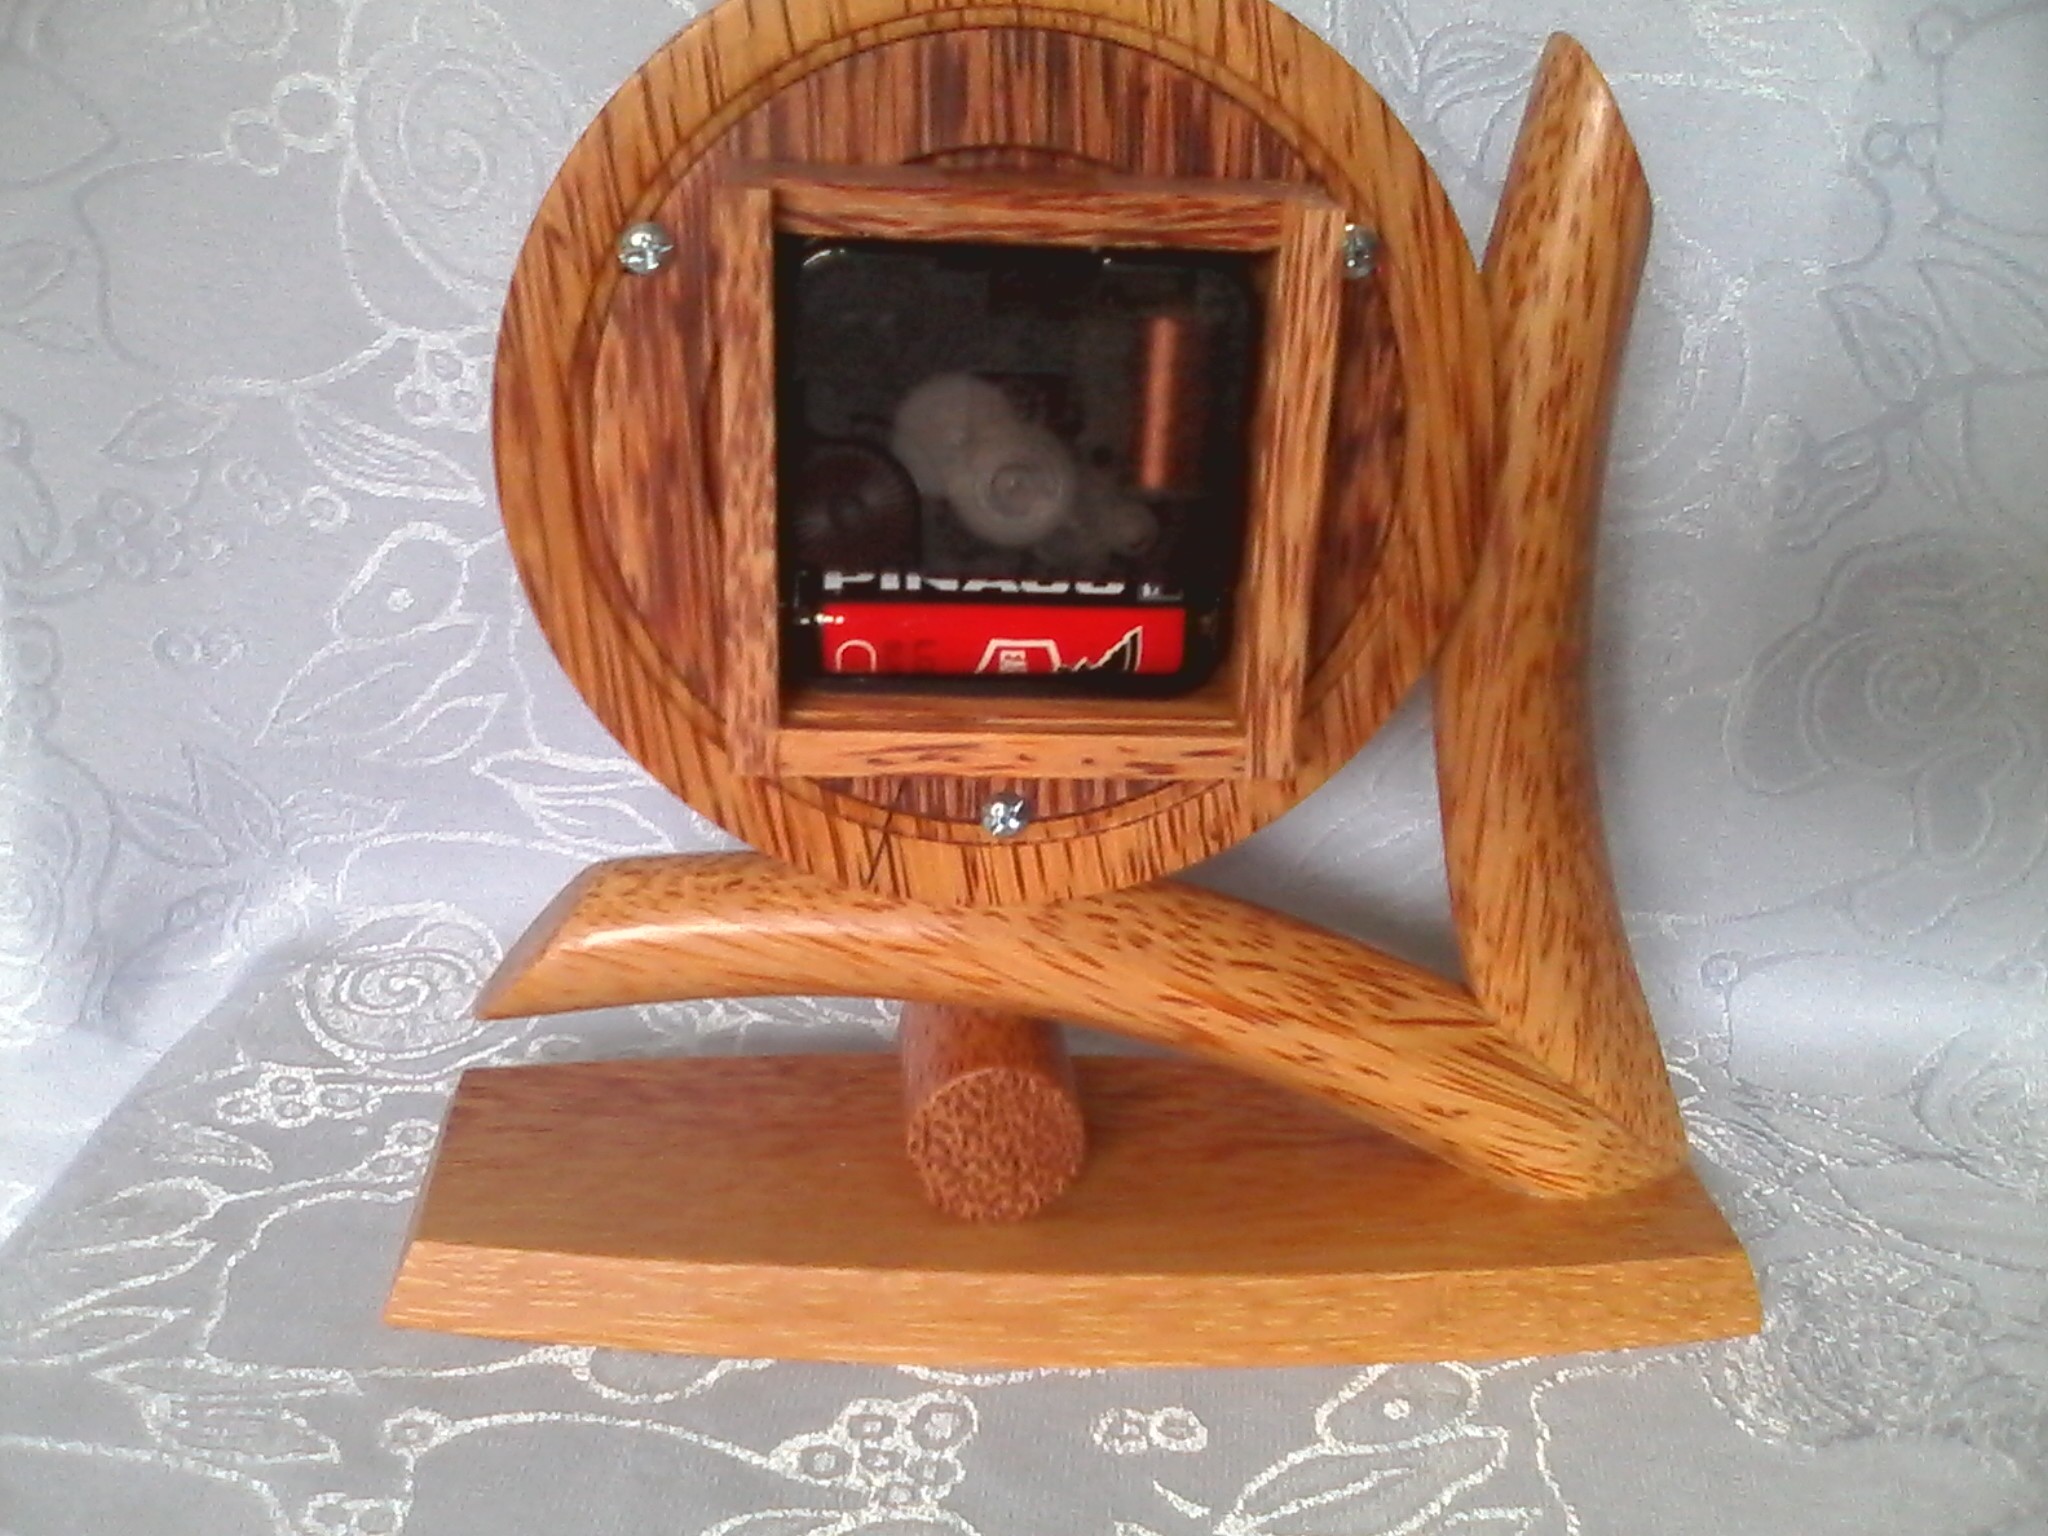 Đồng hồ chữ V gỗ dừa mỹ nghệ